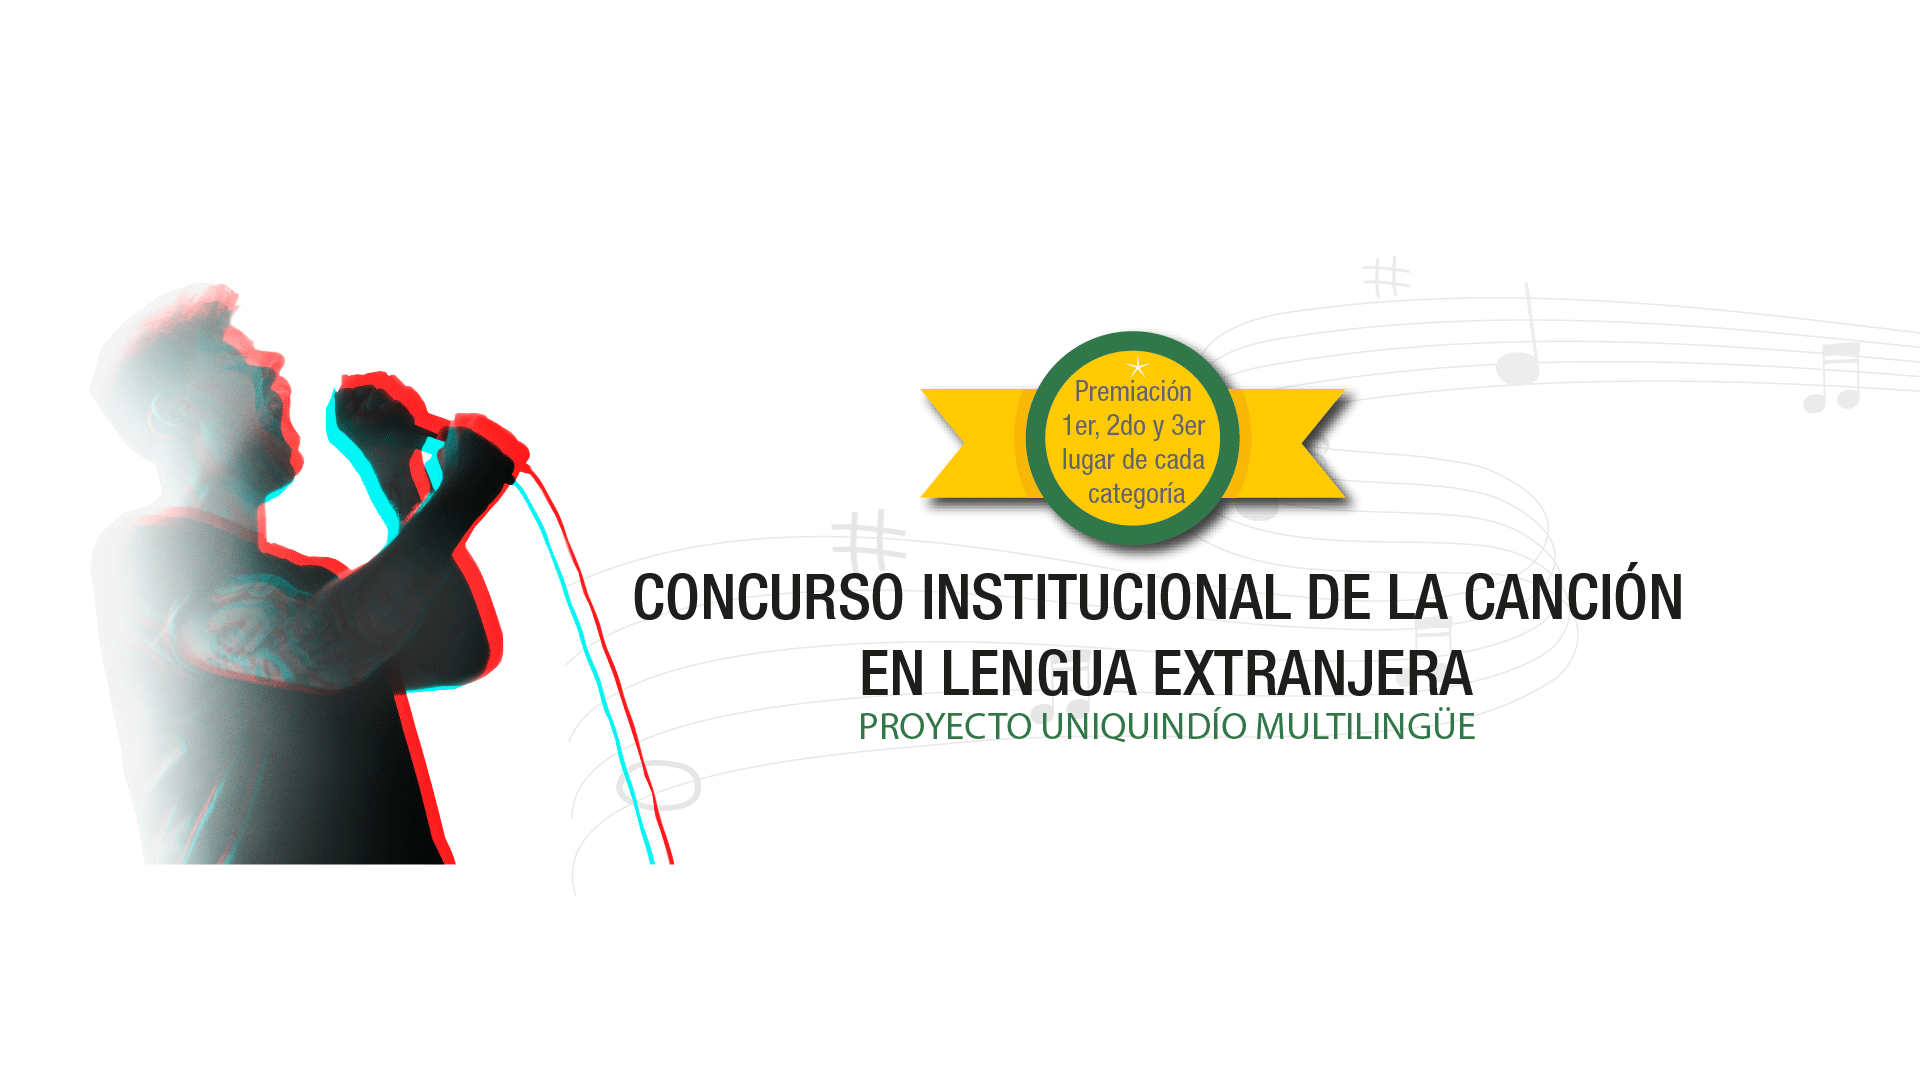 Concurso Institucional de la Canción en Lengua Extranjera | Proyecto Uniquindío Multilingüe | Vicerrectoría Académica